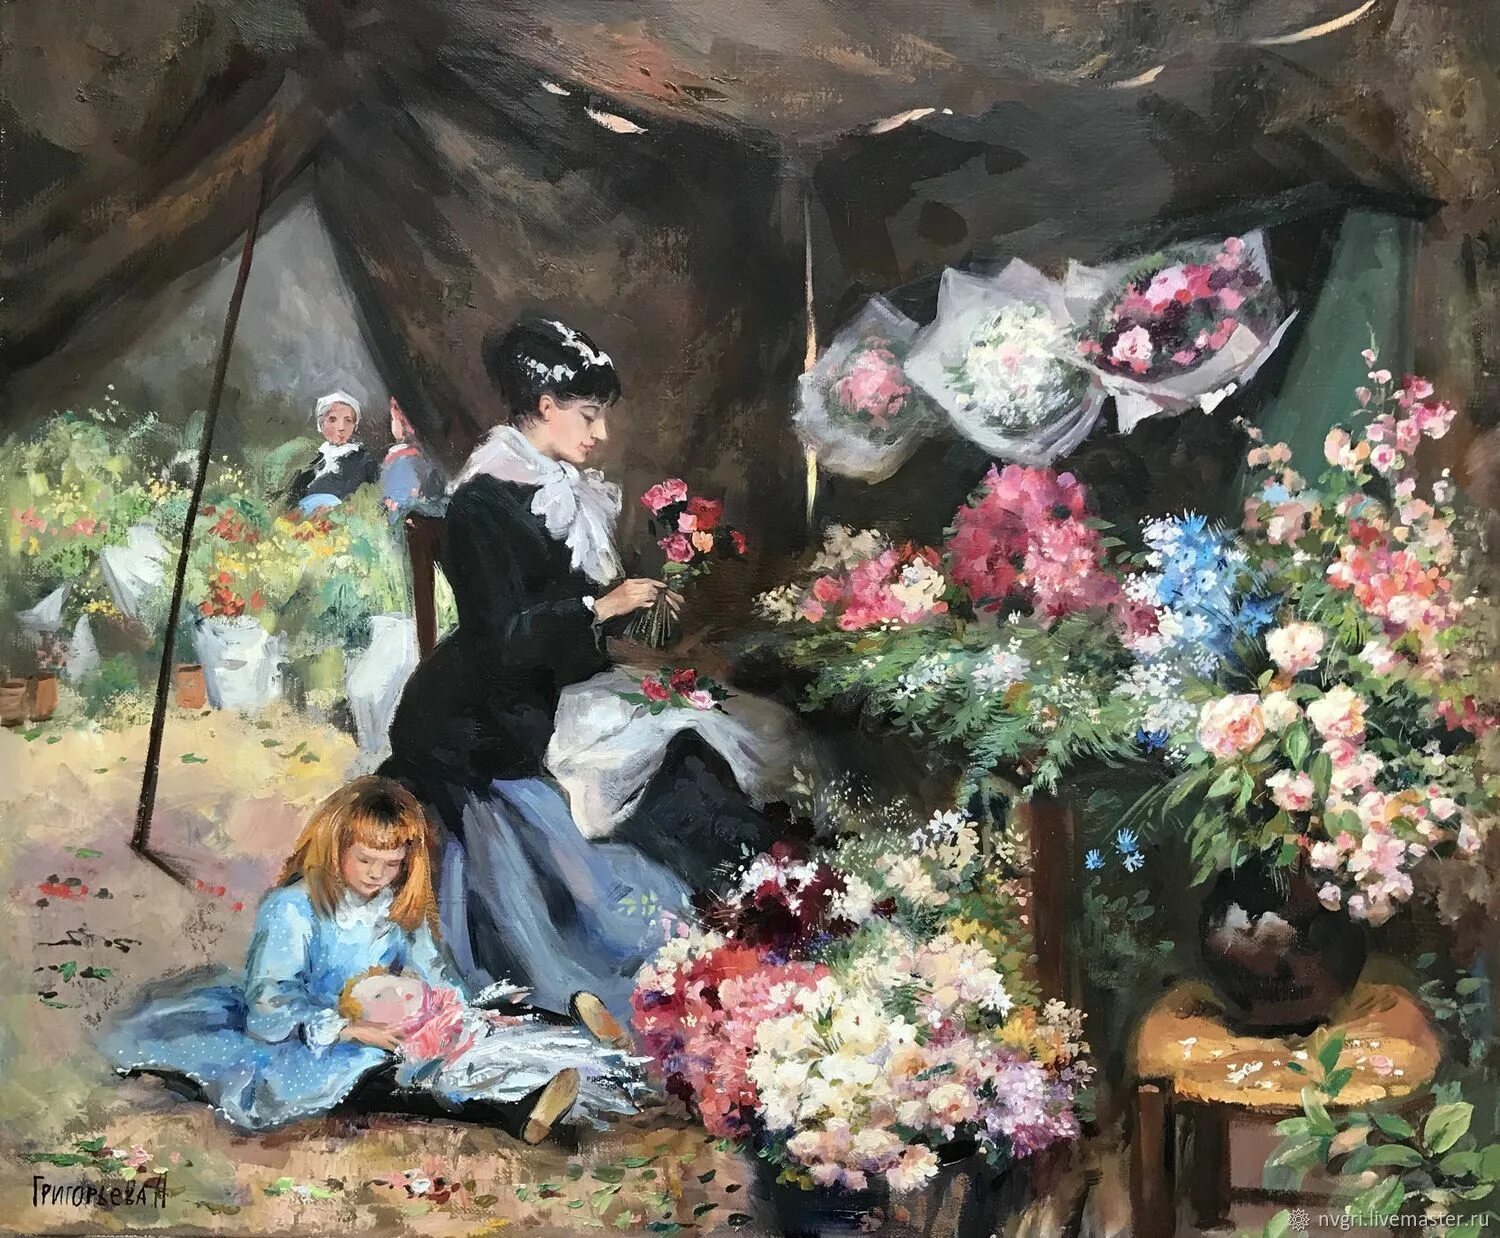 Цветочница часть 21. Луи де Шривер художник. Джон Морган цветочница.